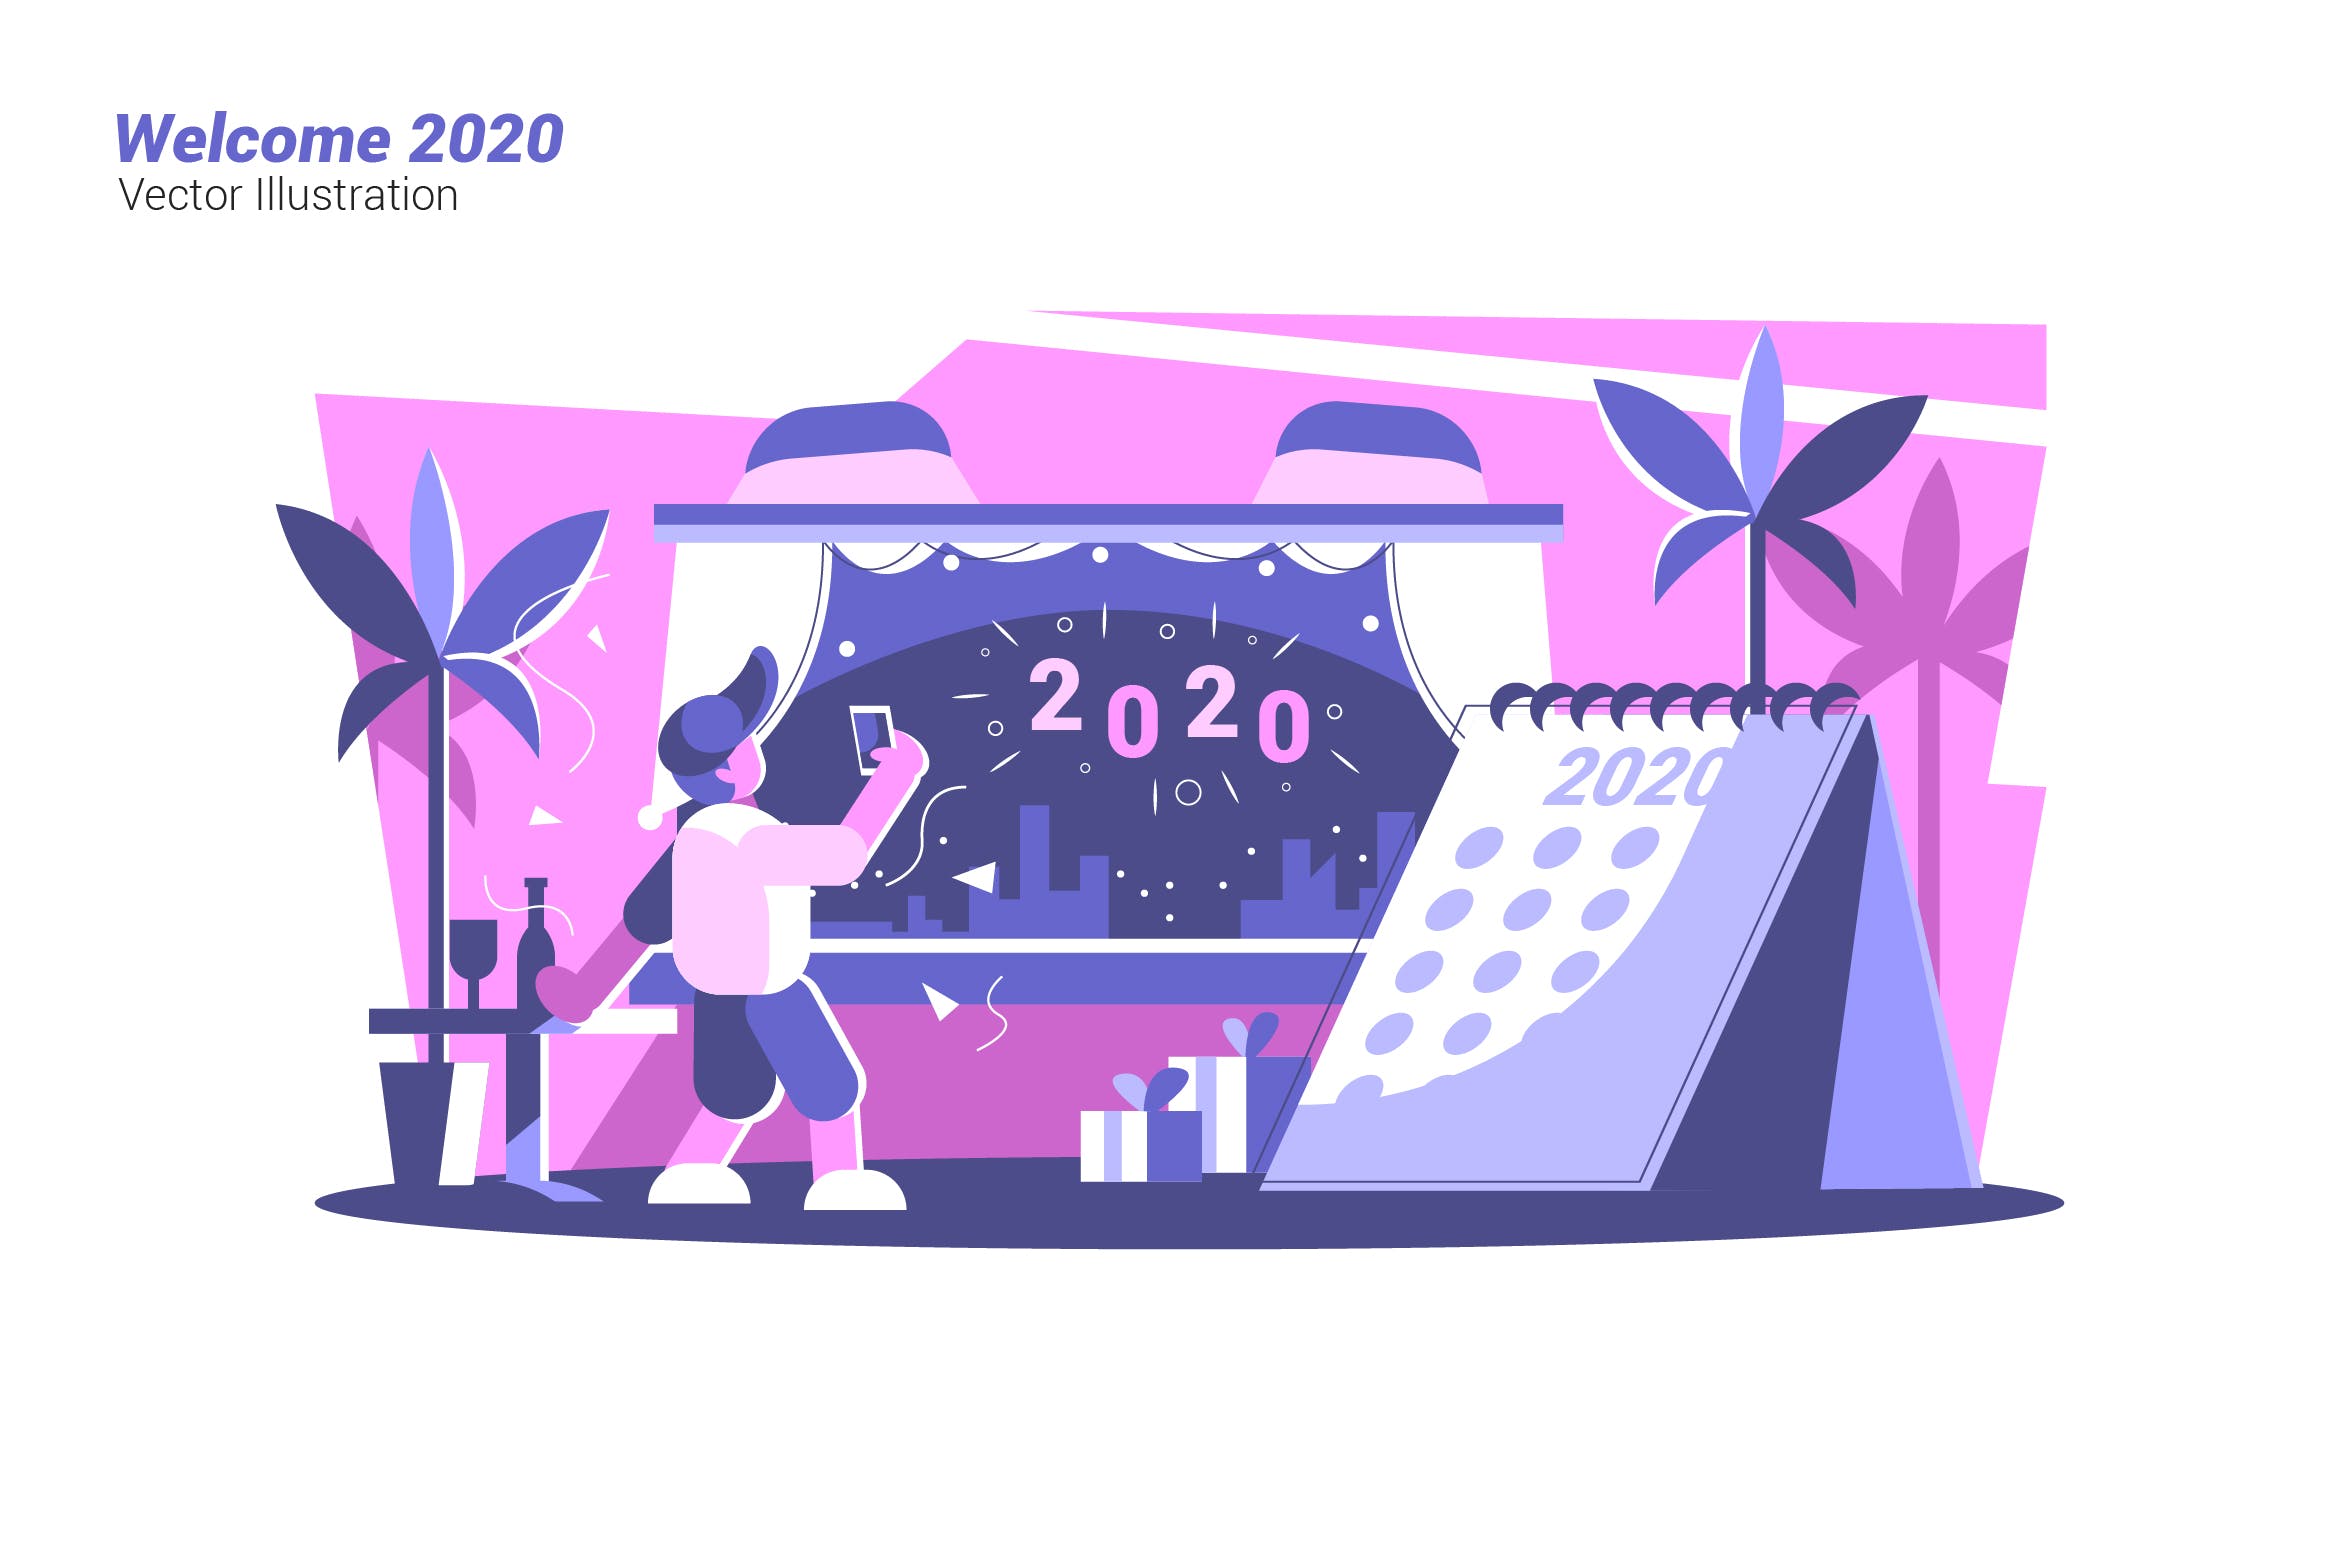 迎接2020主题新年矢量插画素材 Welcome 2020 – Vector Illustration插图